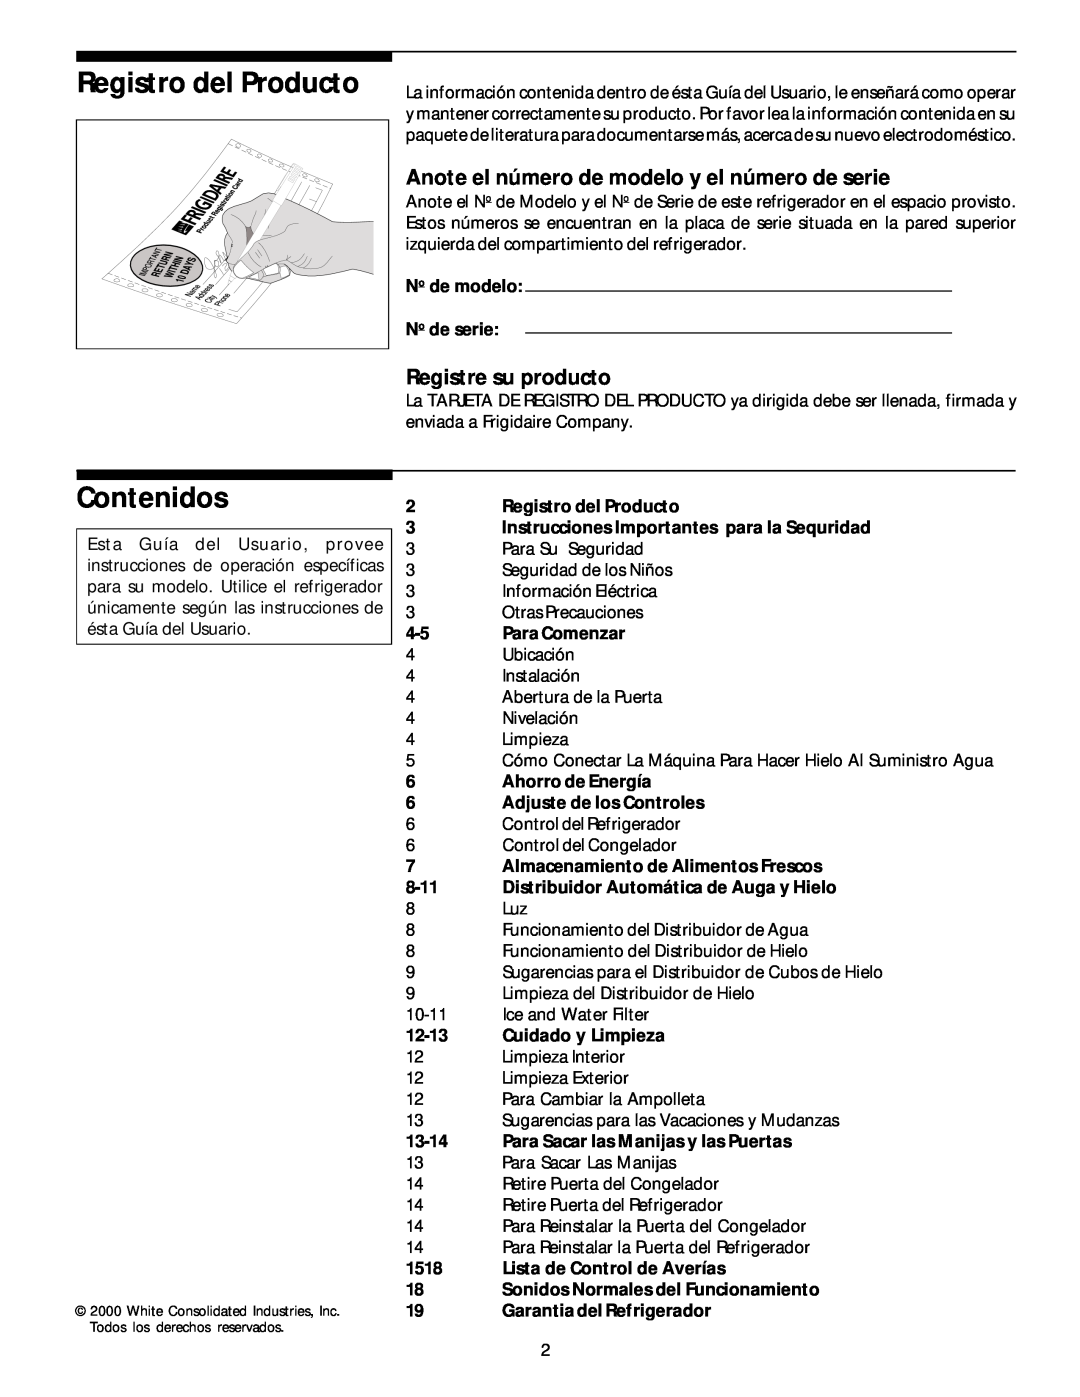 White-Westinghouse 218954301 manual Registro del Producto, Contenidos, Anote el número de modelo y el número de serie, 8-11 